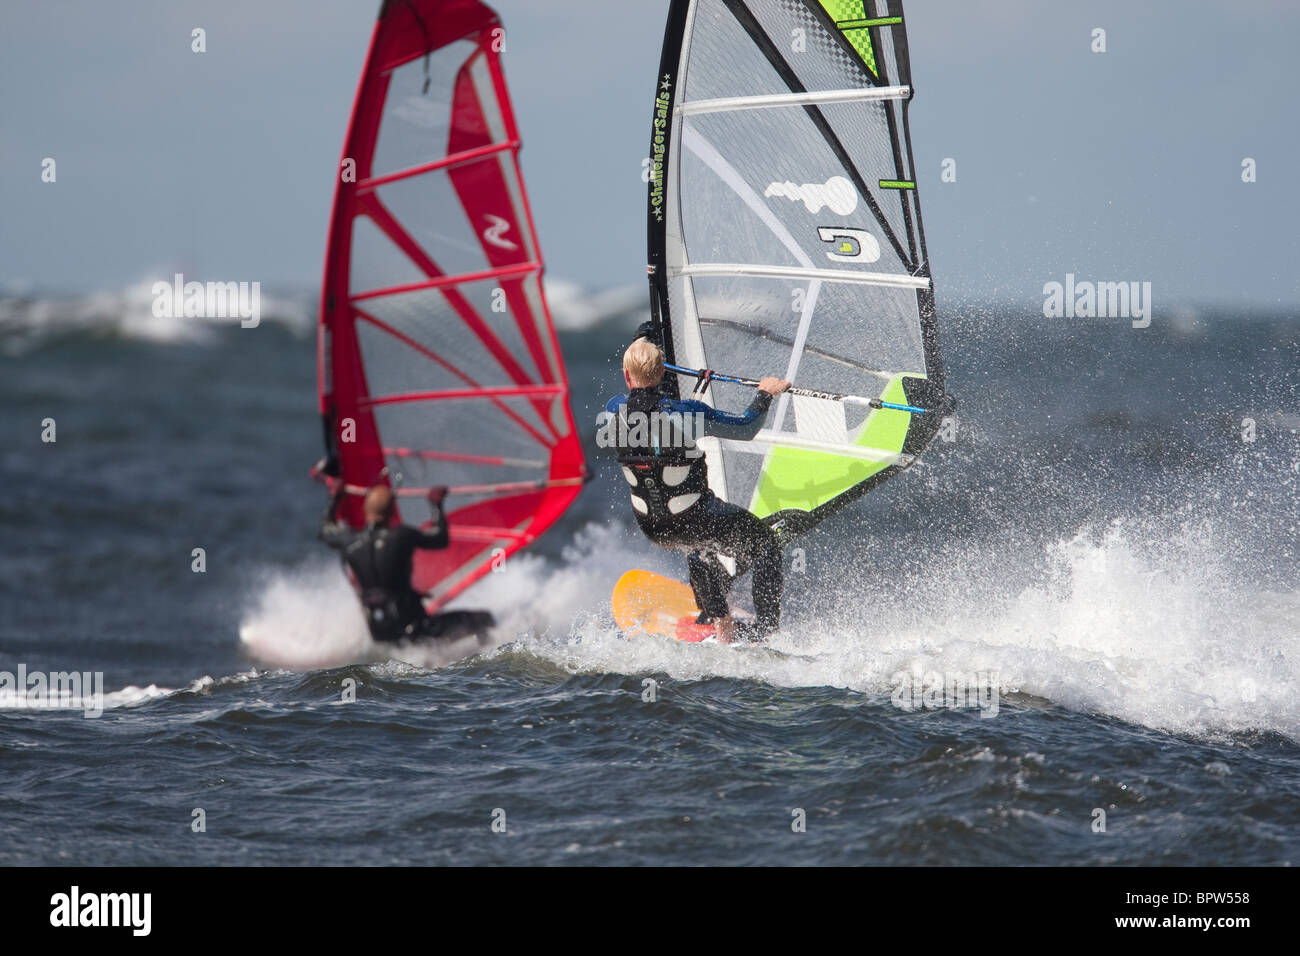 Deux windsurfer s'attaque à une vague Banque D'Images